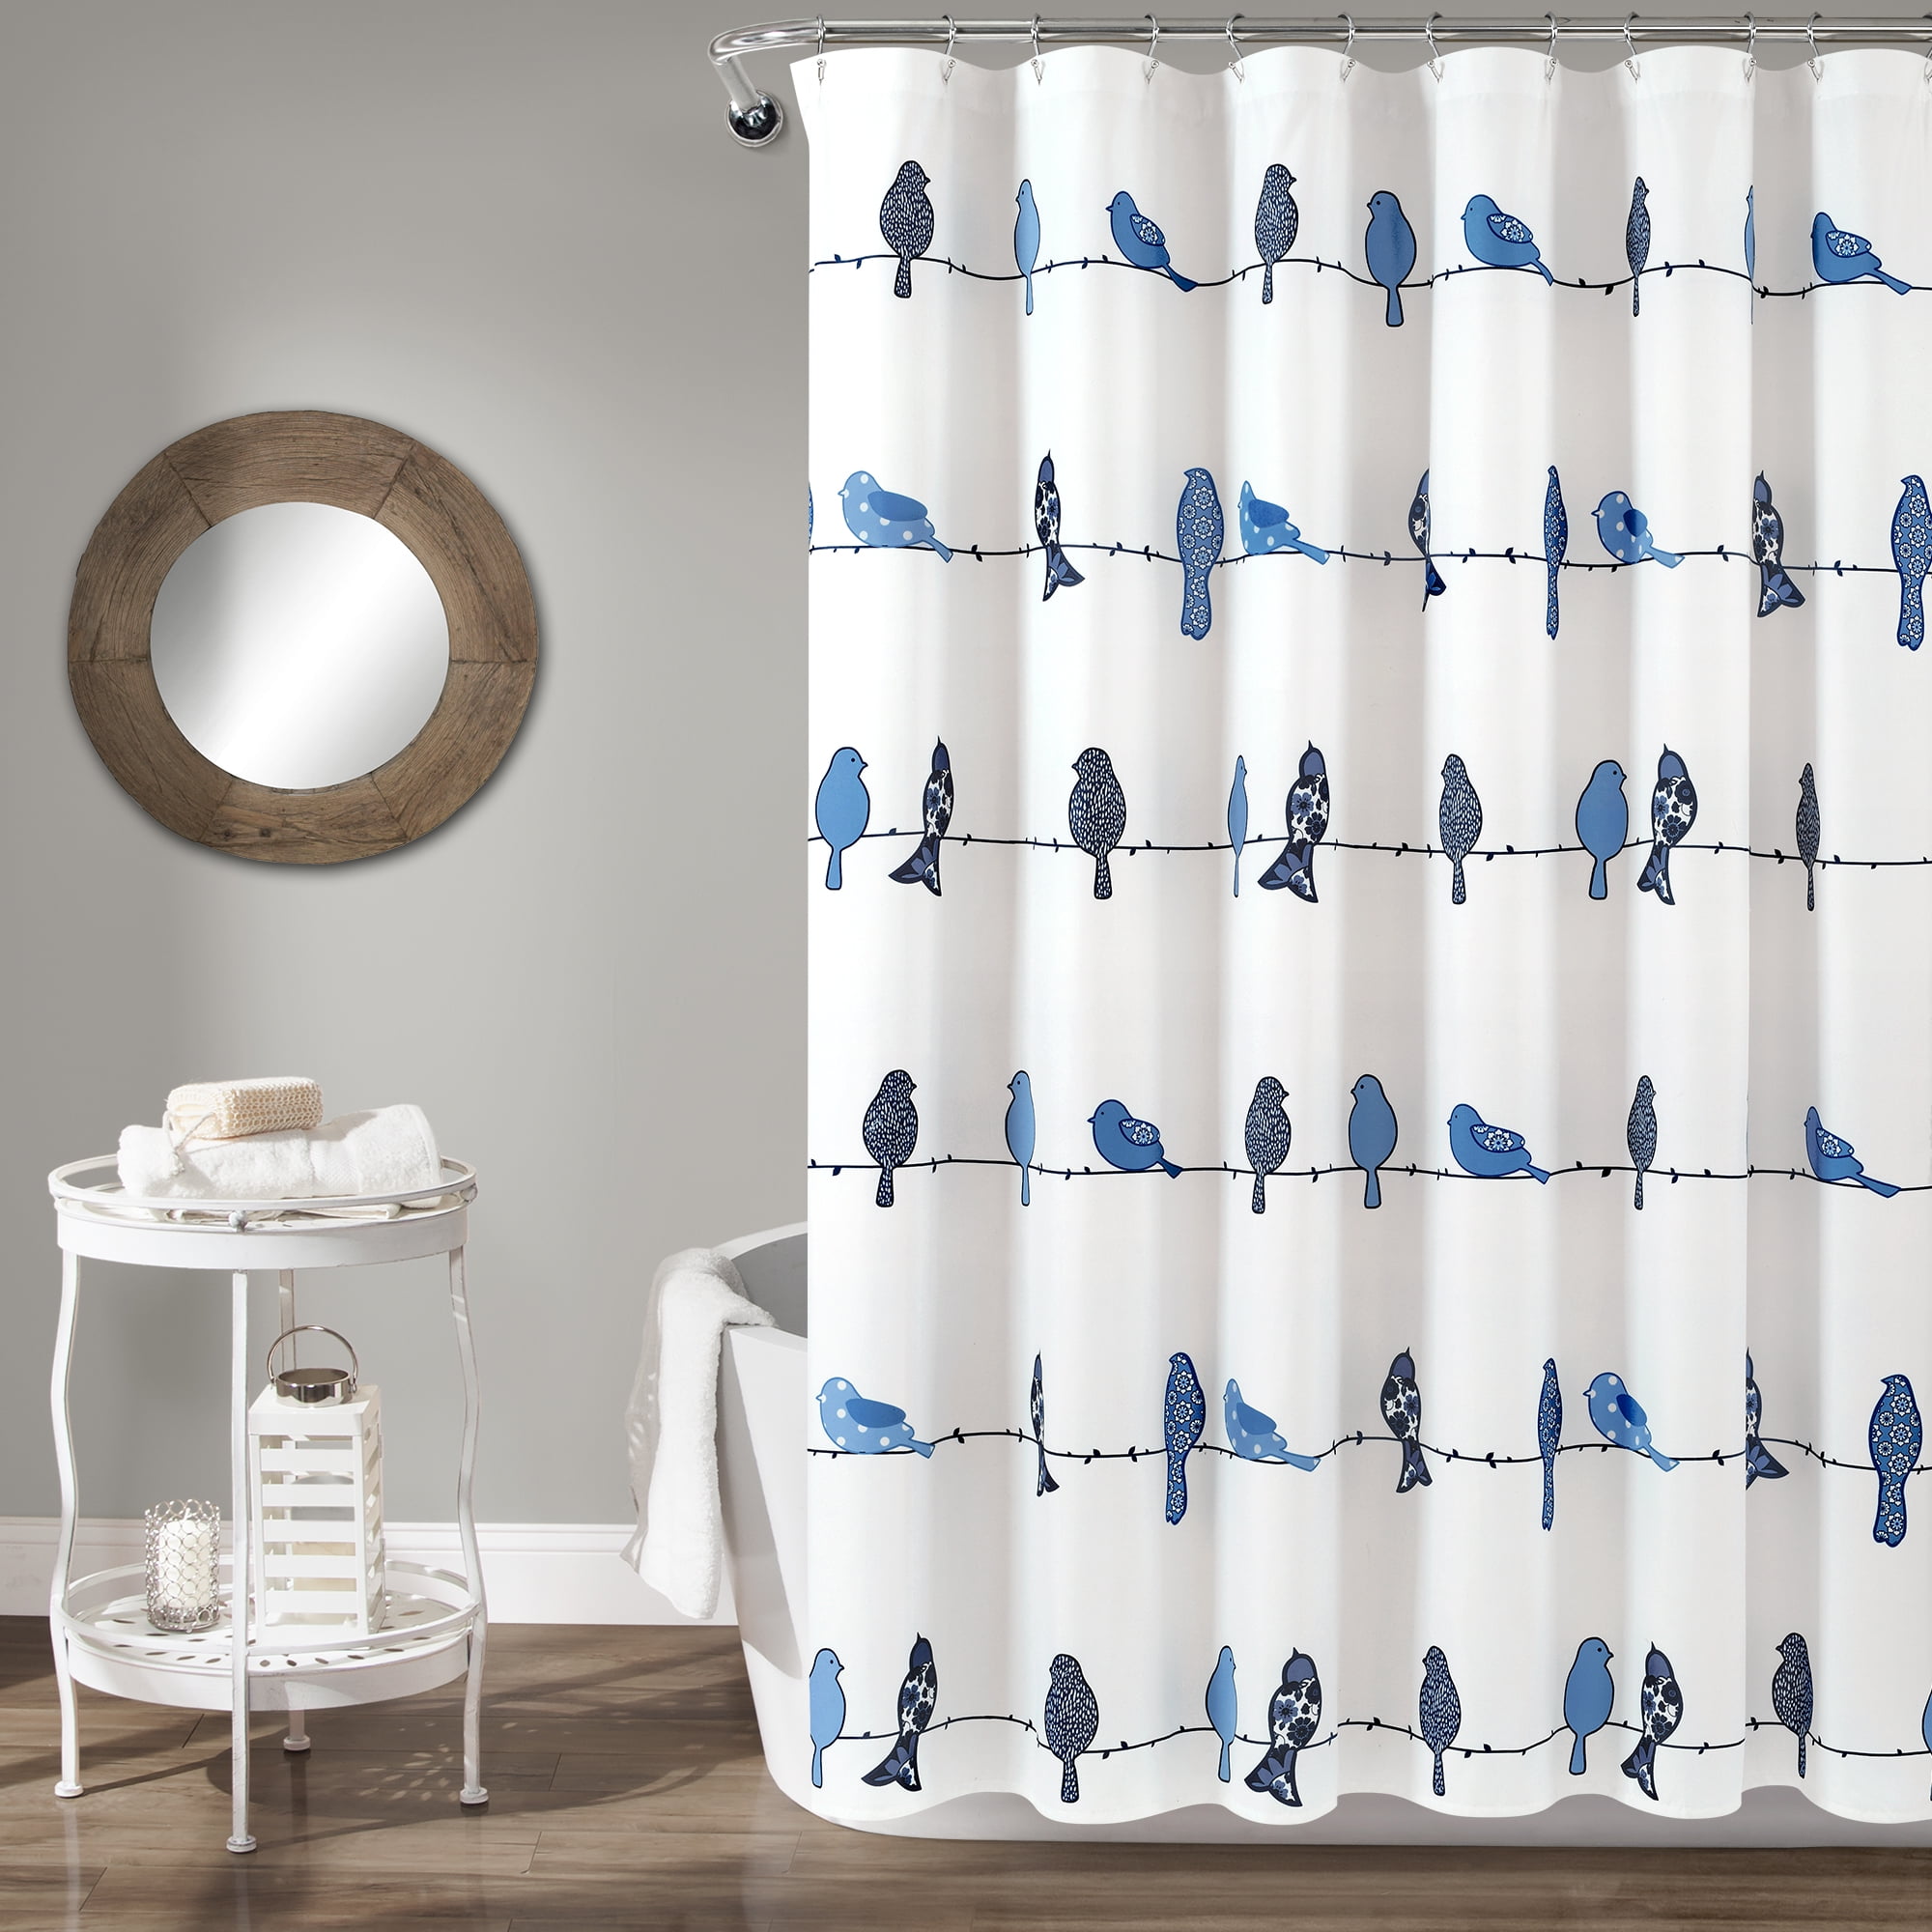 Lighthouse Navigation Guidance Shower Curtain Set Polyester Fabric Bathroom Mat 